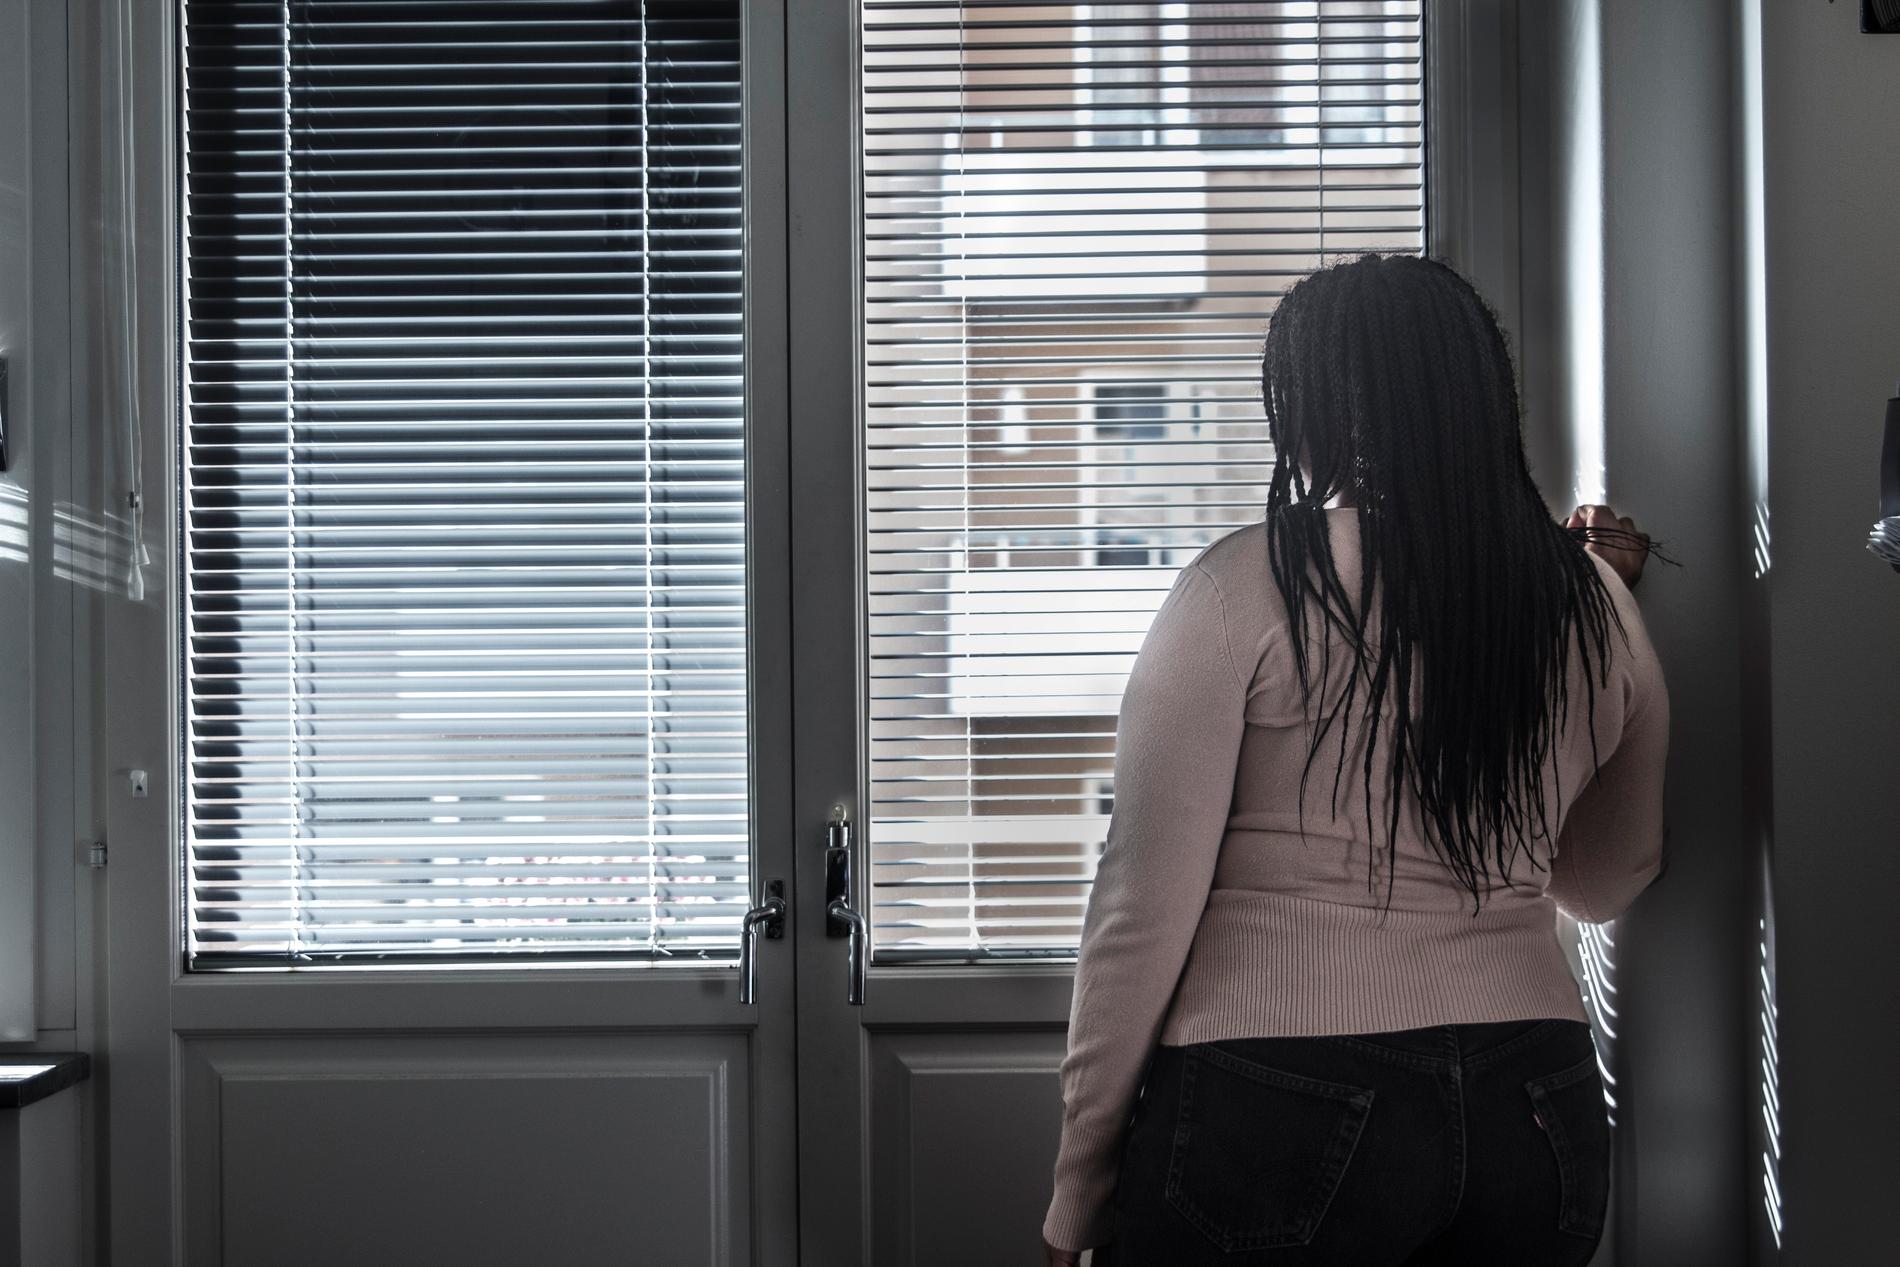 Det är vanligare att flickor sätts i "isolering" inom den statliga tvångsvården – två tredjedelar av besluten om avskiljning gäller flickor, visar ny rapport från organisationen Barnrättsbyrån. Arkivbild.